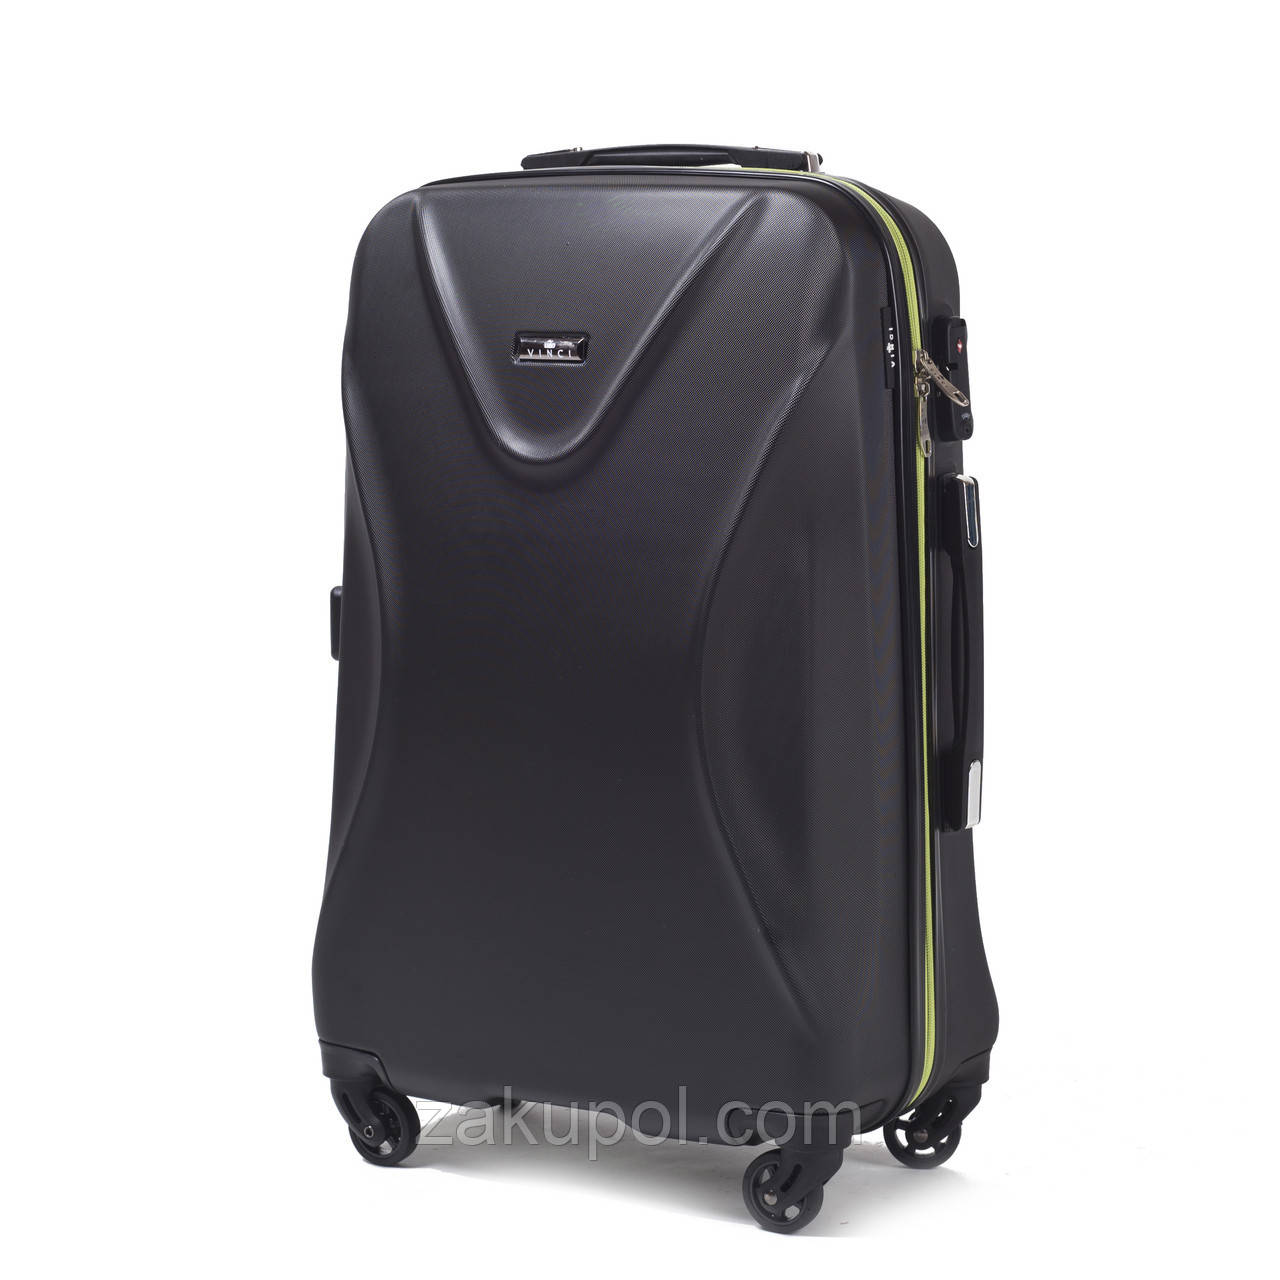 Ультралегкий валізу VINCI 518 (ручна поклажа) Чорний/зелені замки